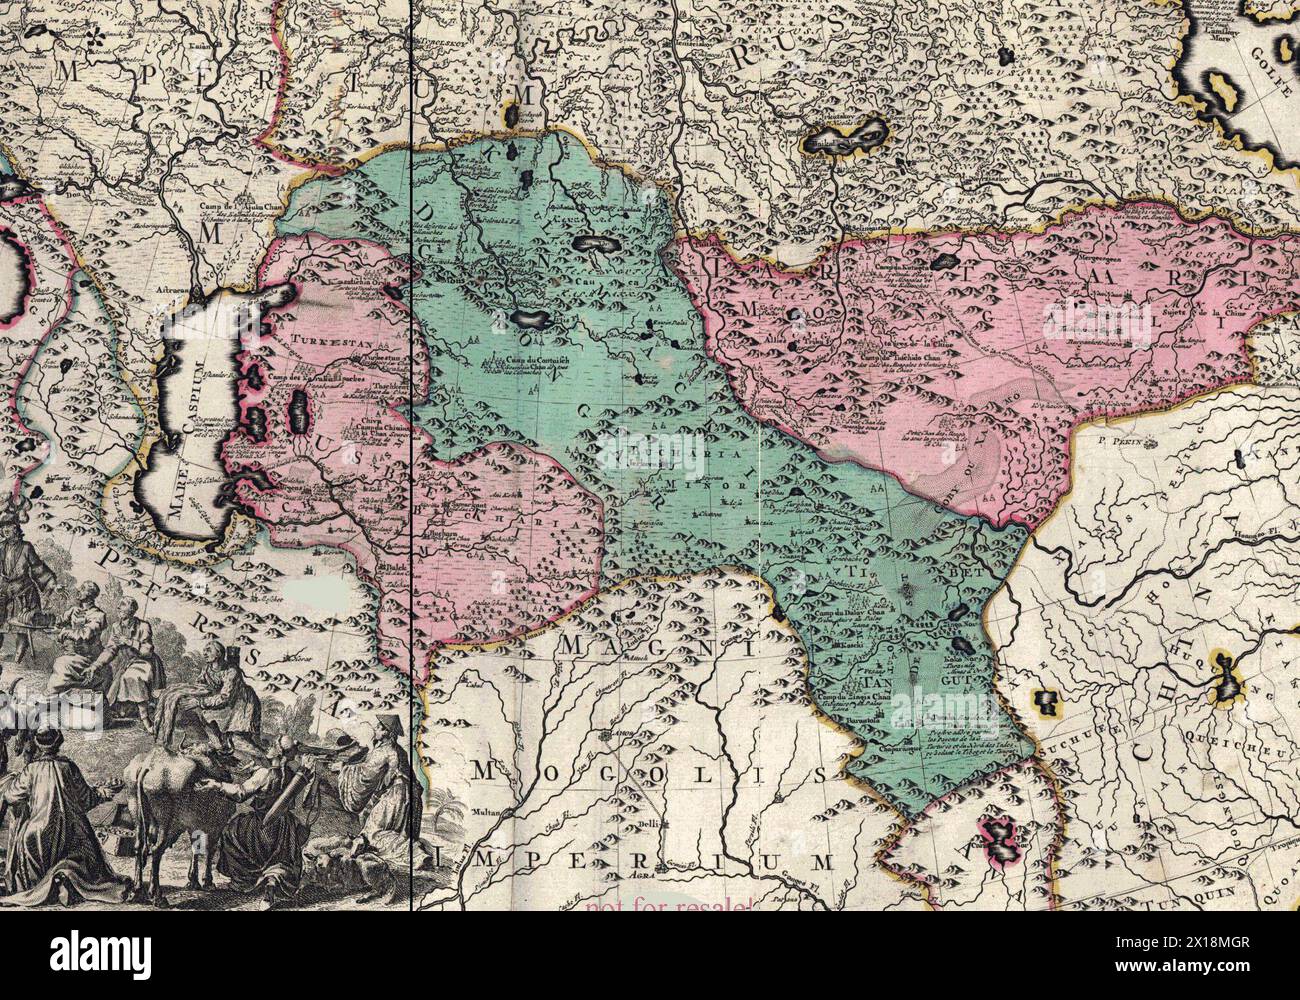 Questo è un frammento della mappa dell'Impero russo di Pietro il grande. Questa mappa è stata creata dai prigionieri di guerra svedesi approssimativamente nel 1725. Tra gli altri stati vicini mostrò l'Impero dei Calmucchi, la Dzungaria (evidenziata dal colore verde). Foto Stock